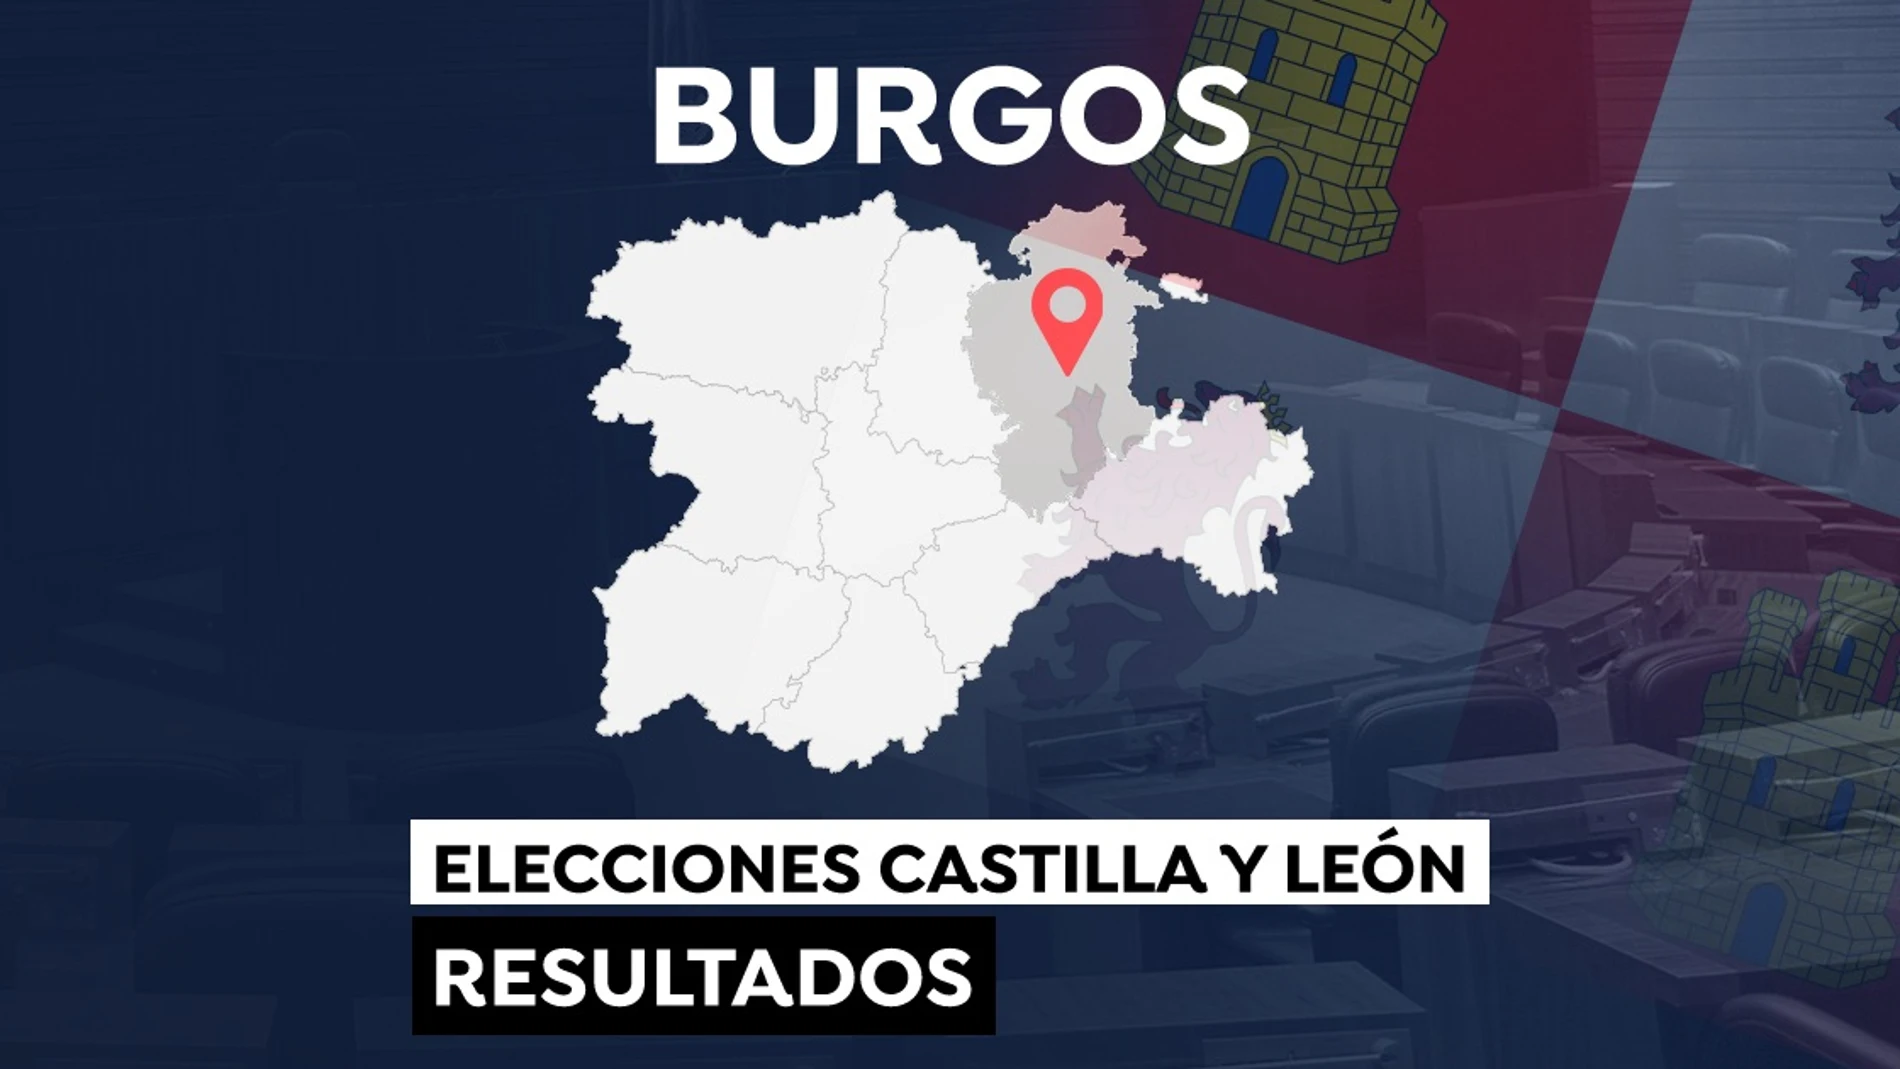 Elecciones a las Cortes de Castilla y León 2022: Resultado en el municipio de Burgos